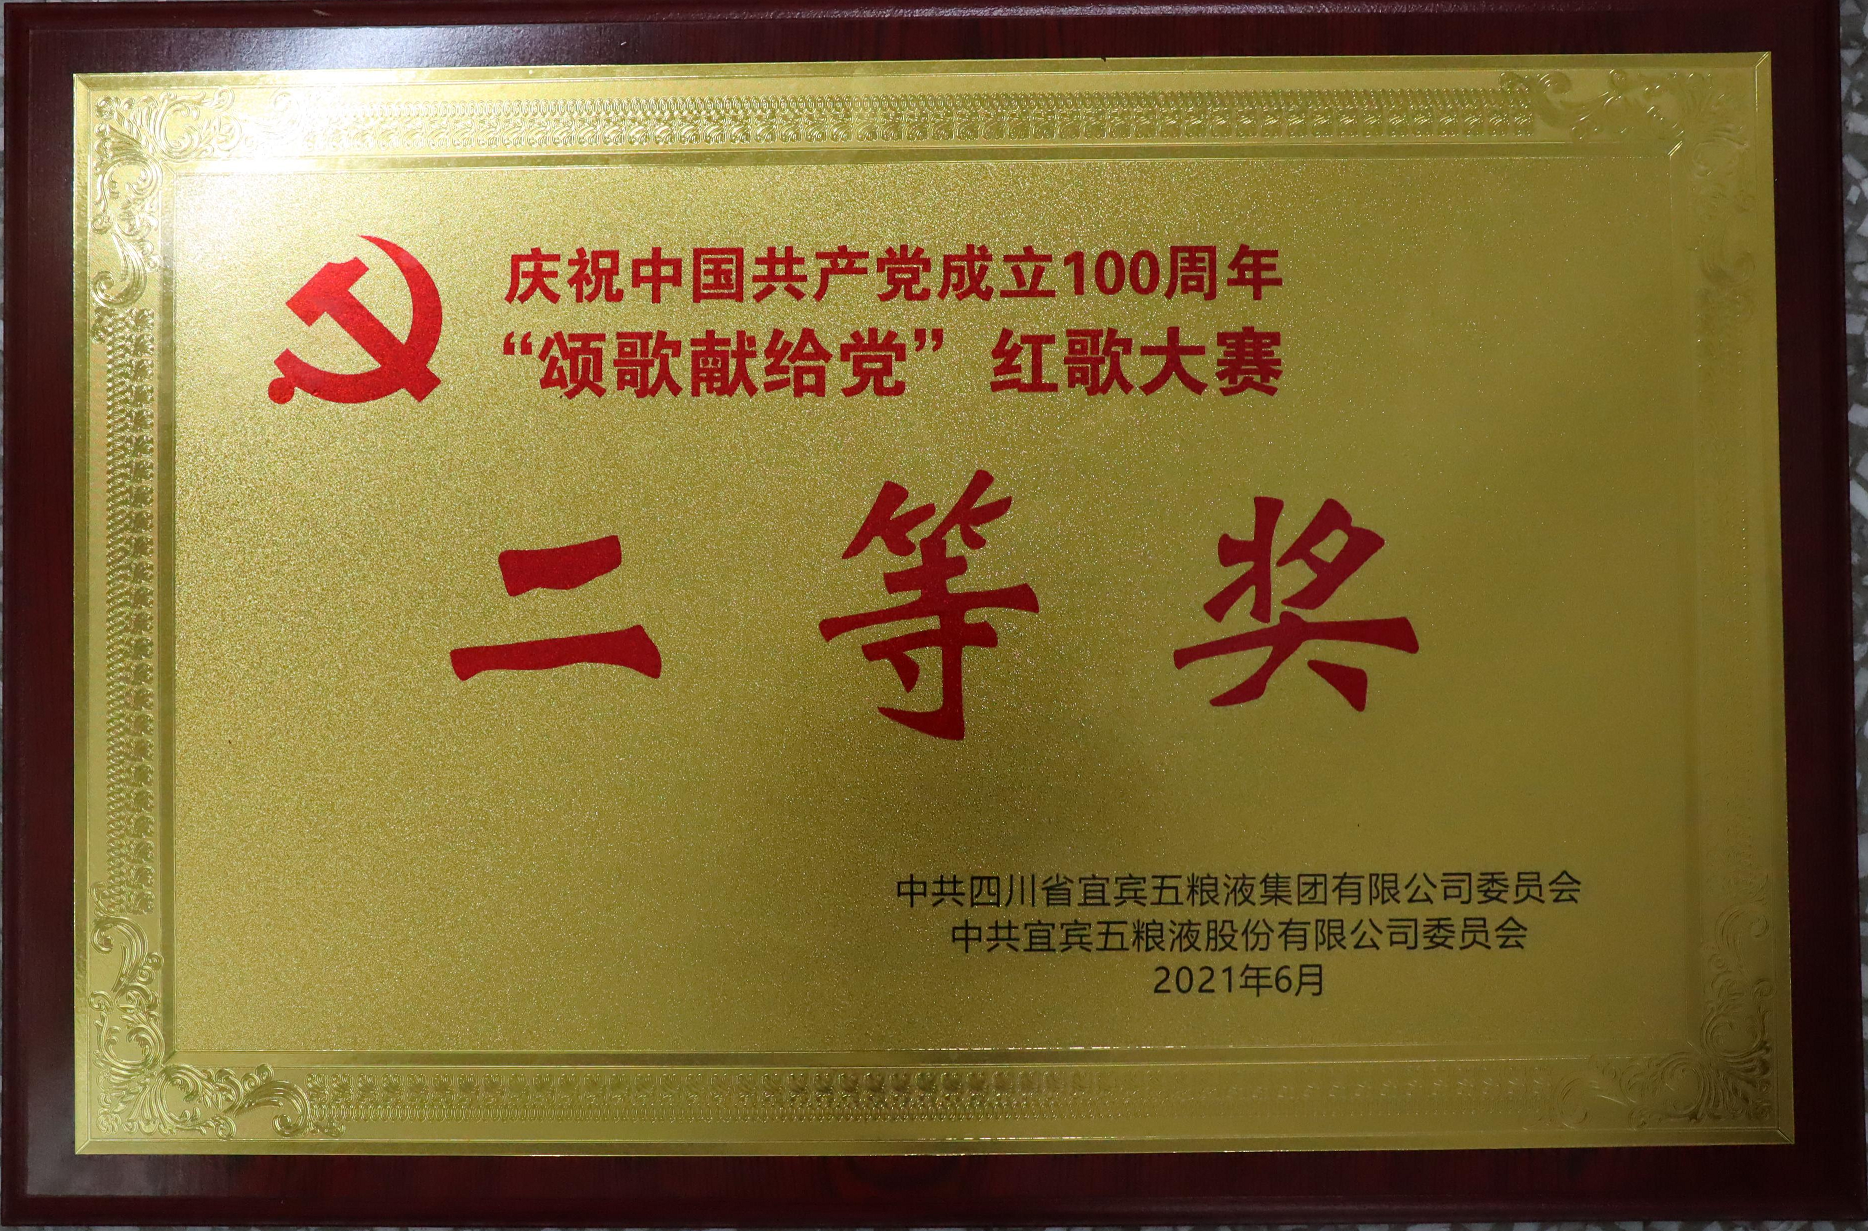 庆祝中国共产党成立100周年“颂歌献给党”红歌大赛  二等奖